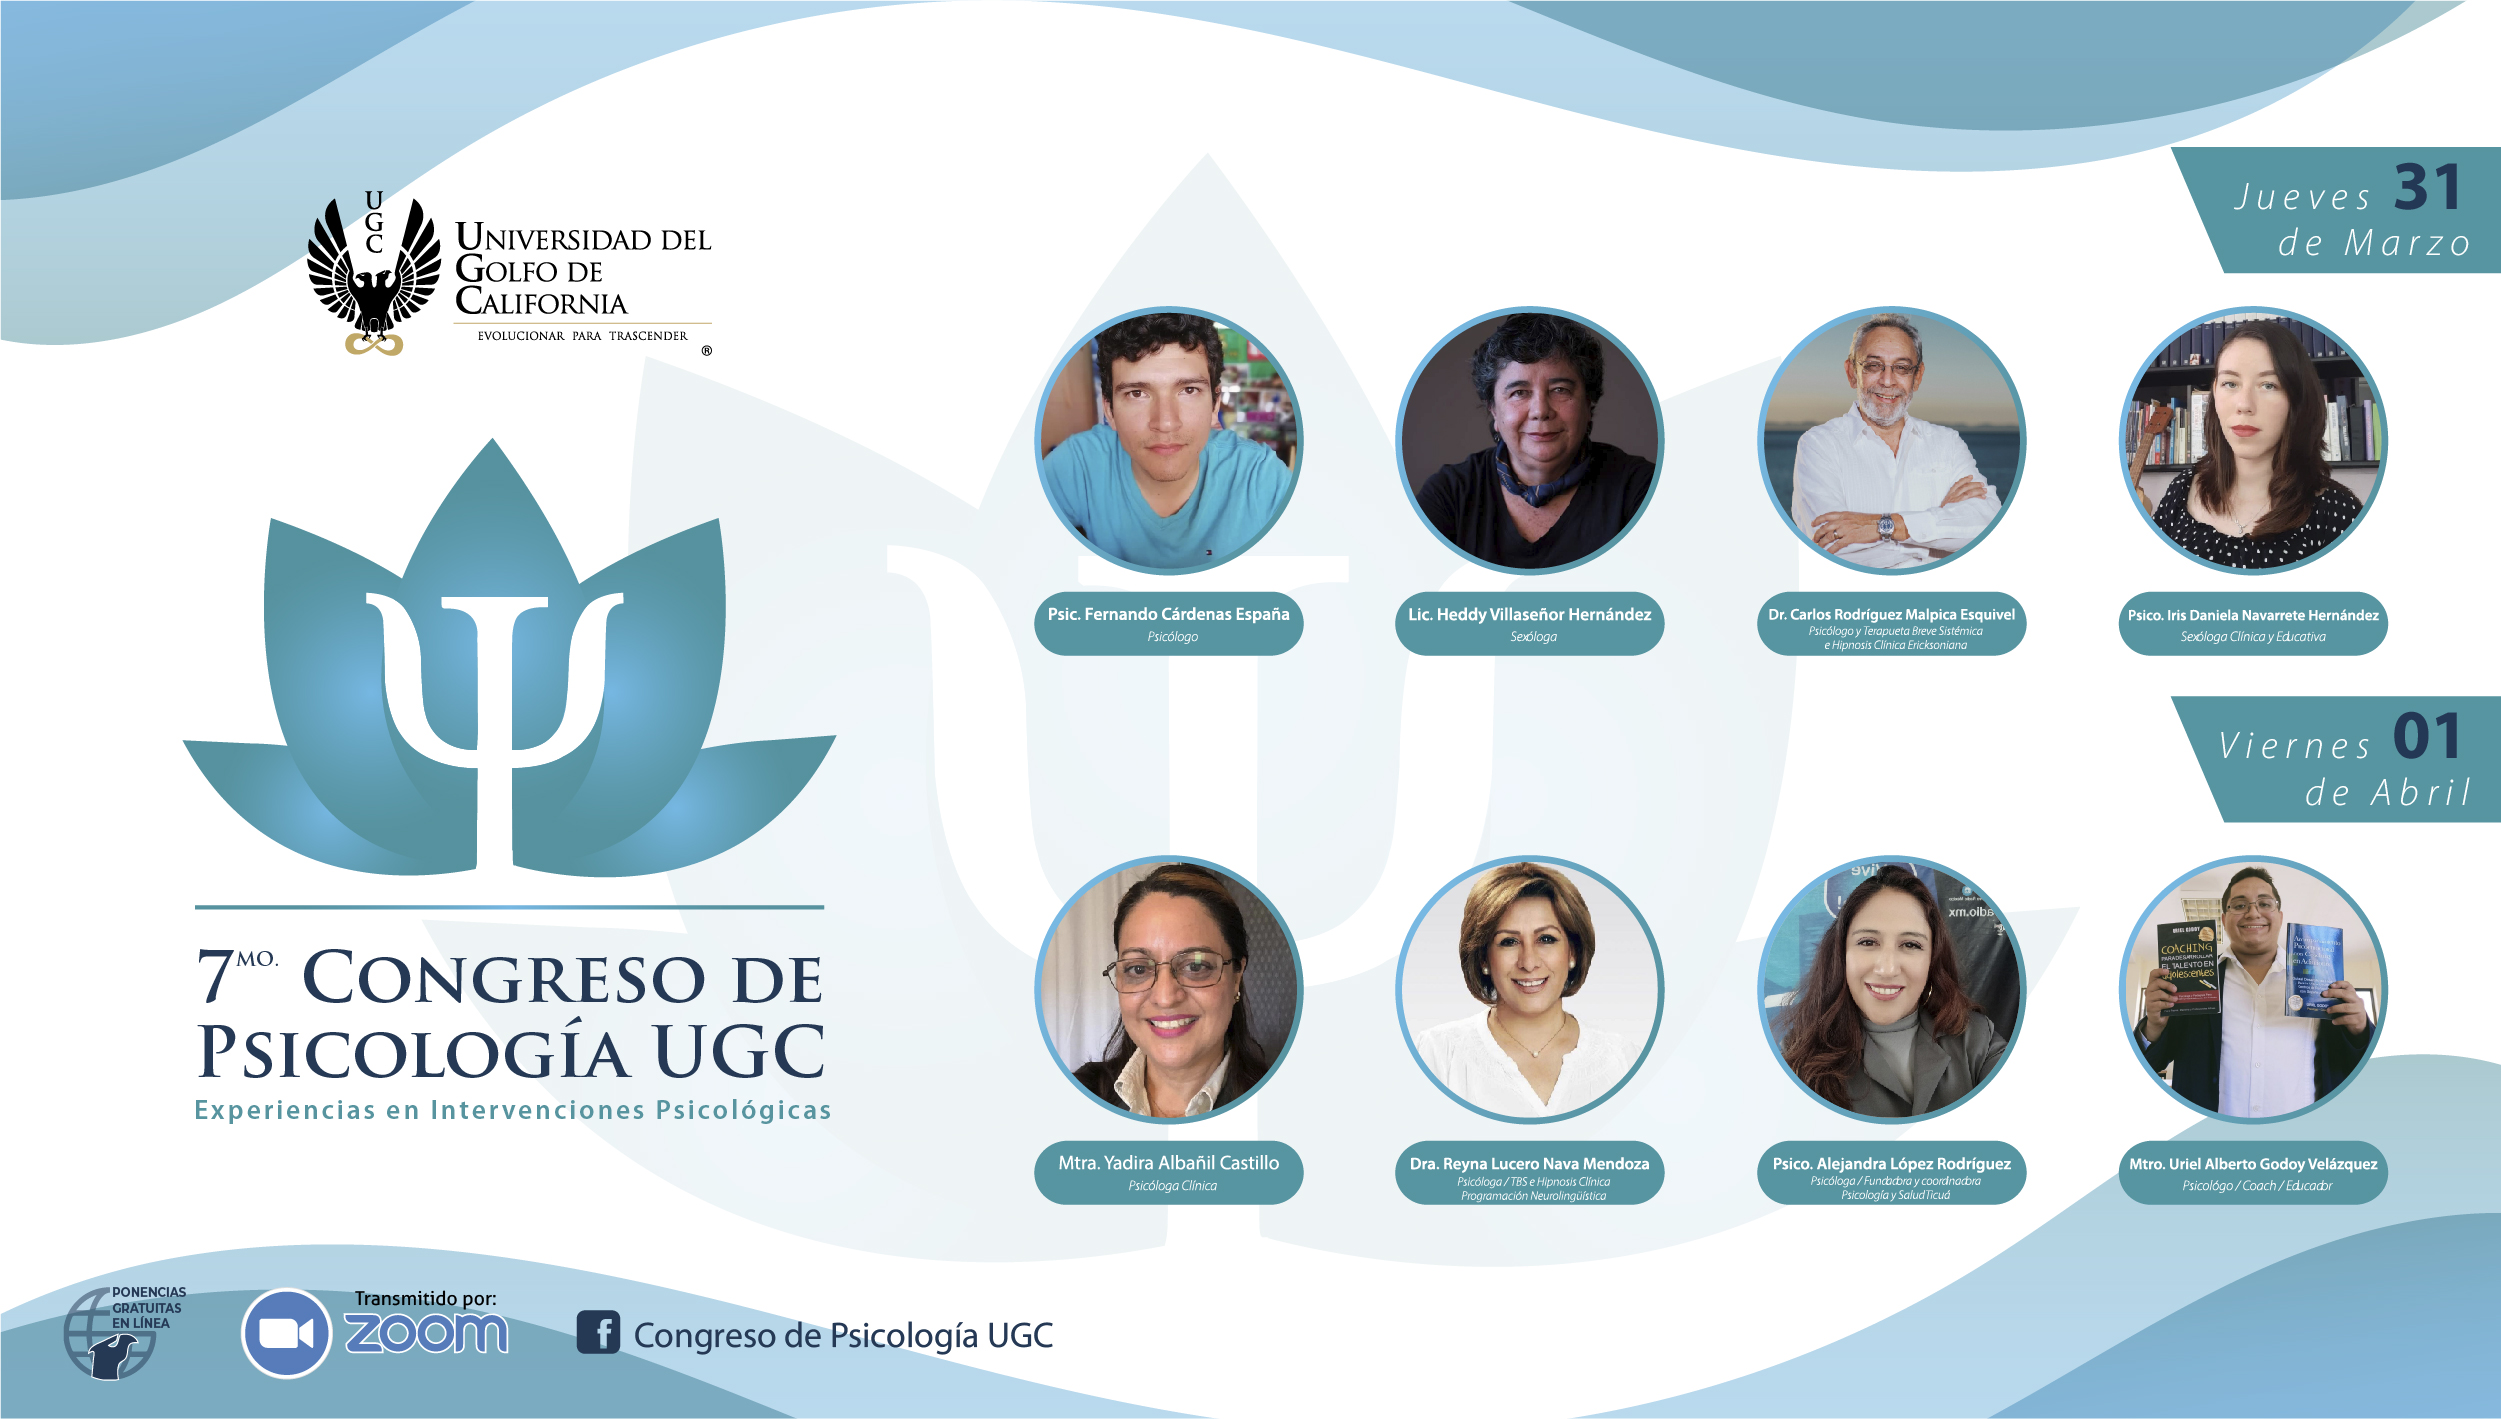 7mo. Congreso de Psicología UGC 2022 denominado "Experiencias en Intervenciones Psicológicas"